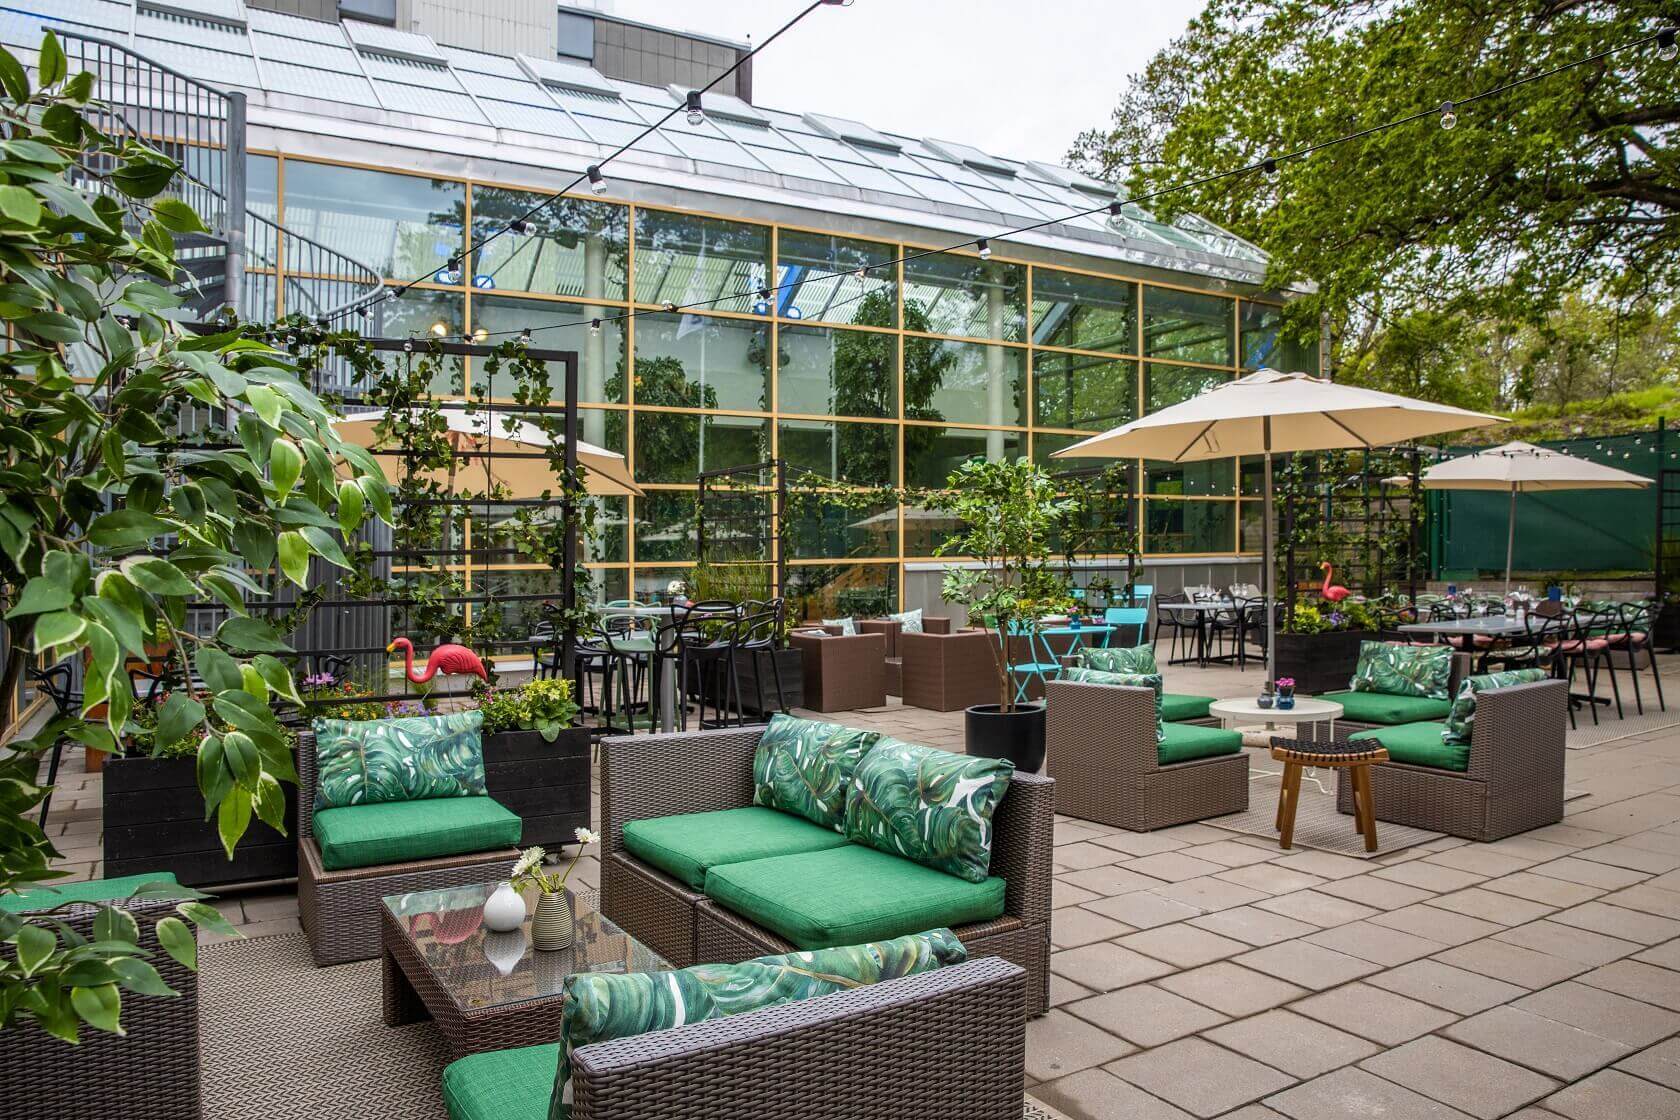 Terrassen på Park Inn by Radisson Solna är perfekt för en bubbel- eller grillkväll